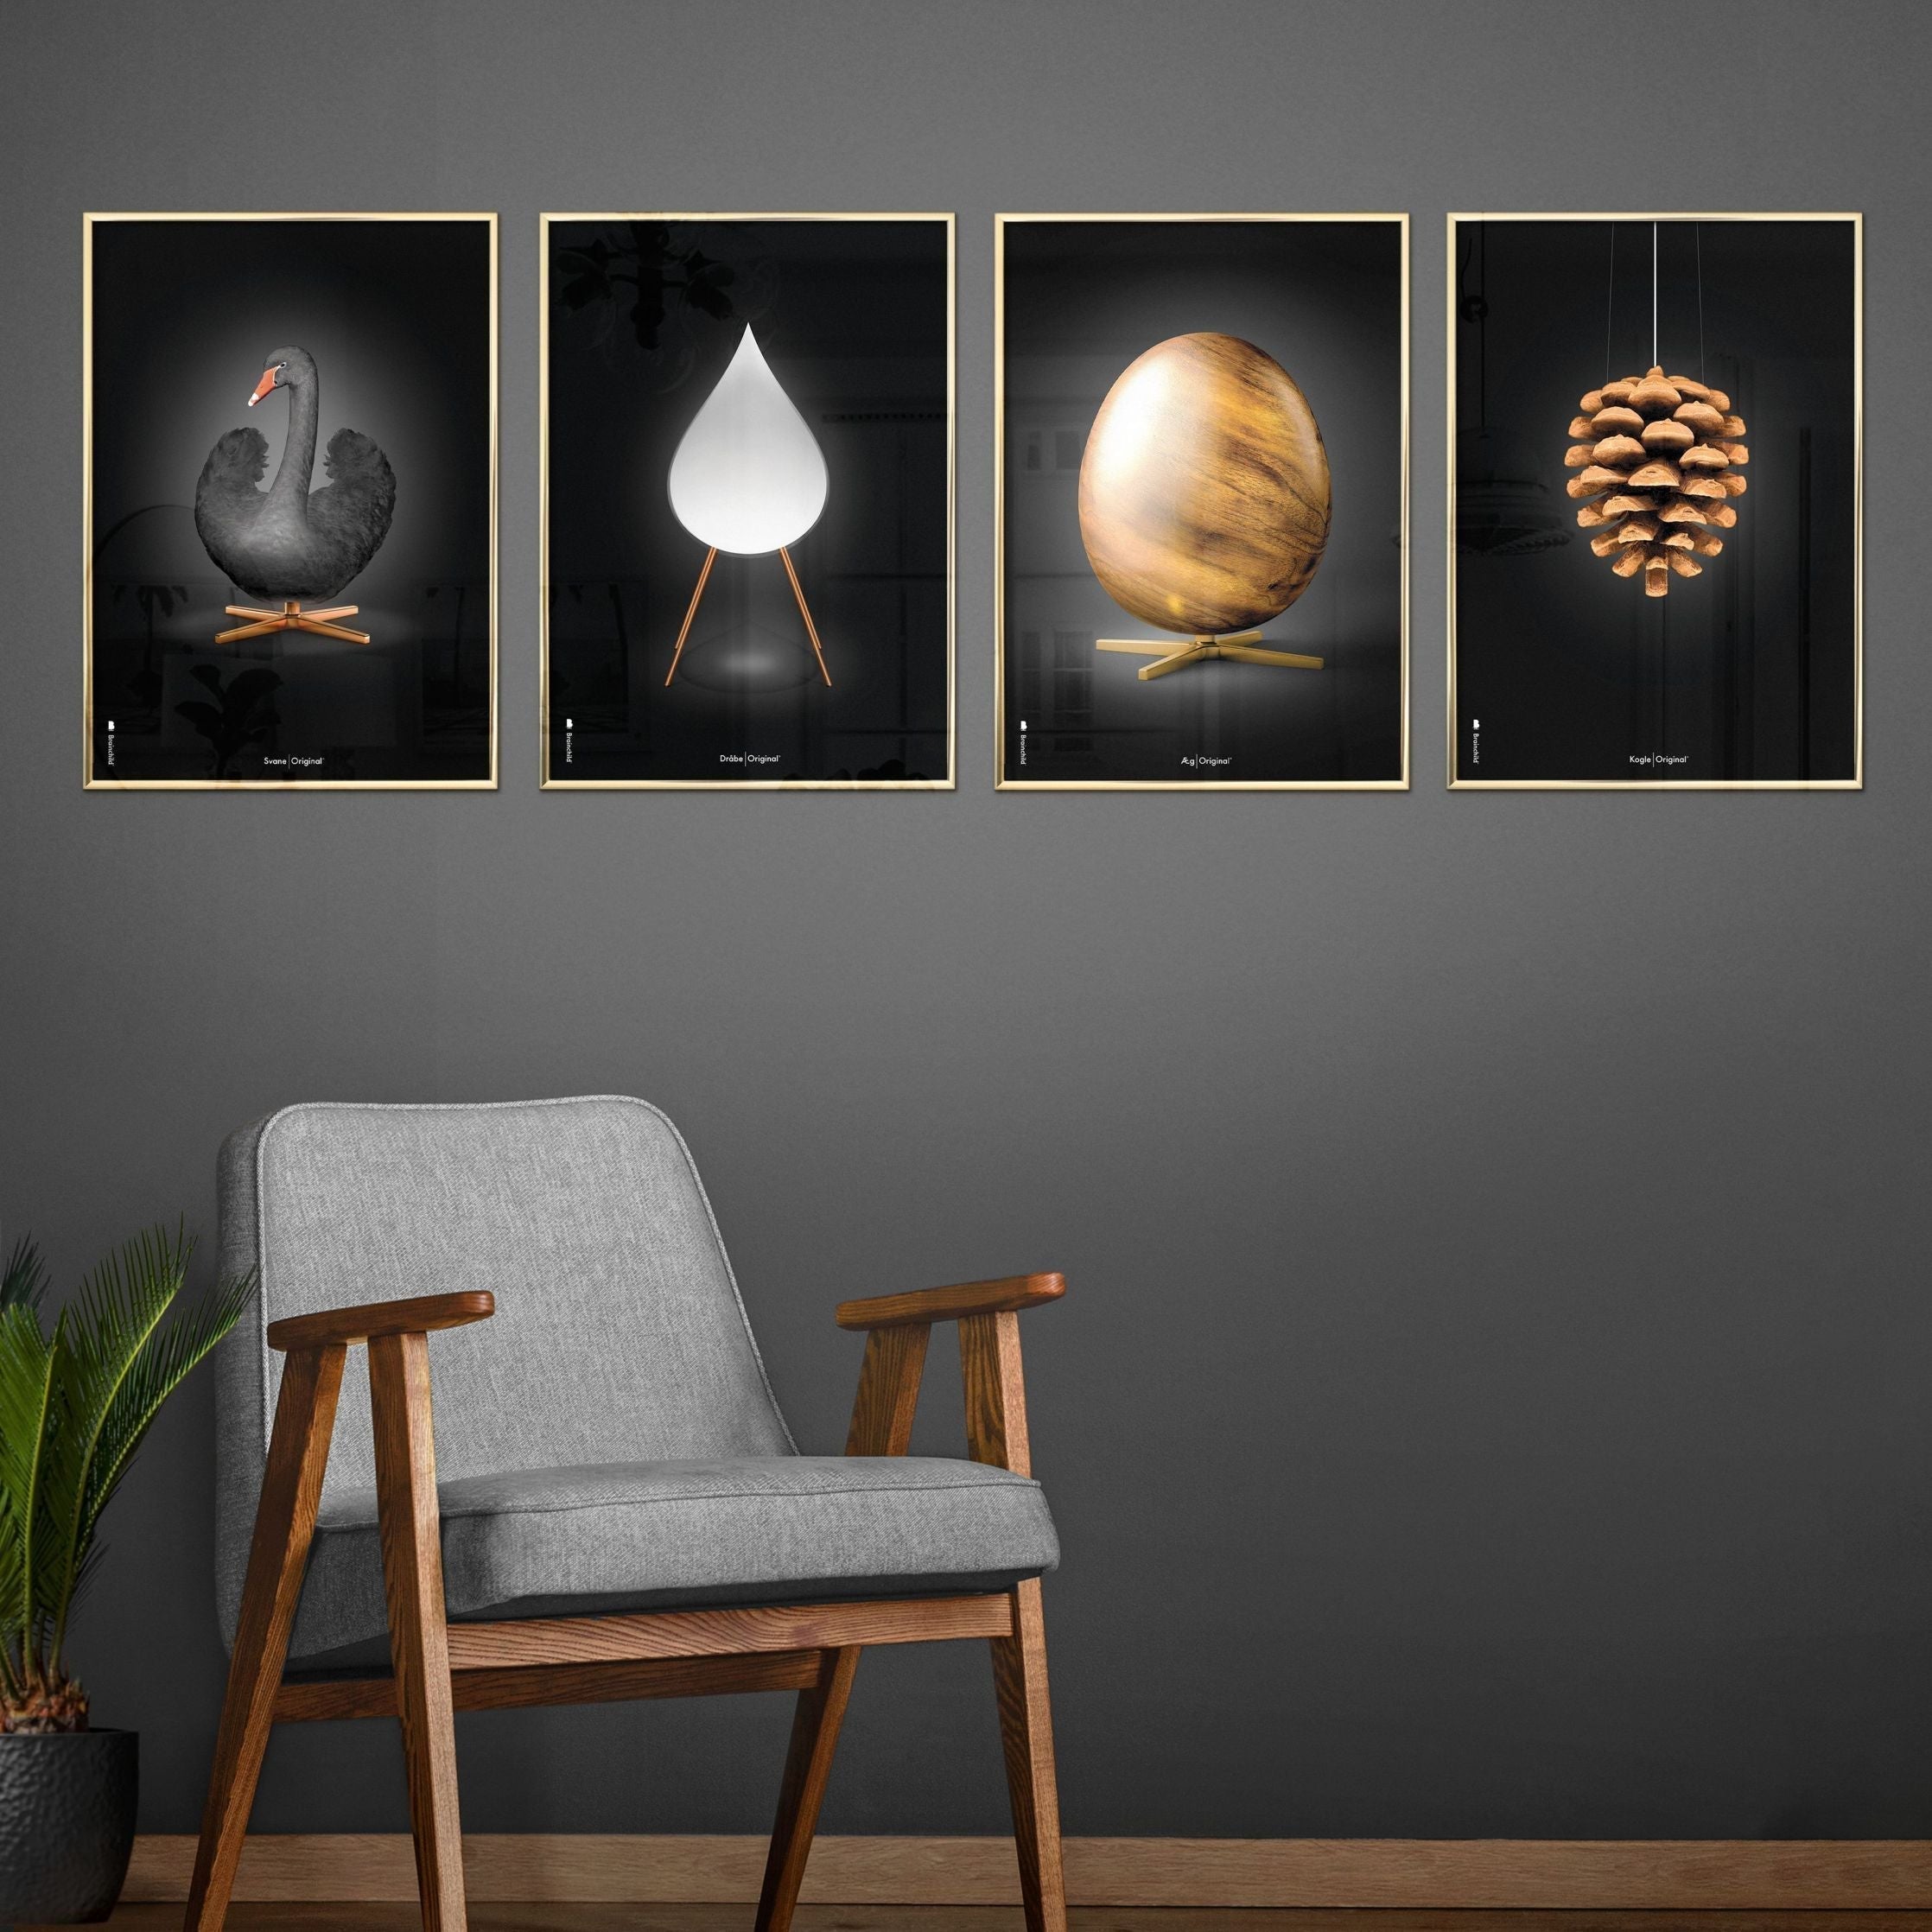 Brainchild Egg Figures Poster, Frame Made Of Light Wood 50x70 Cm, Black